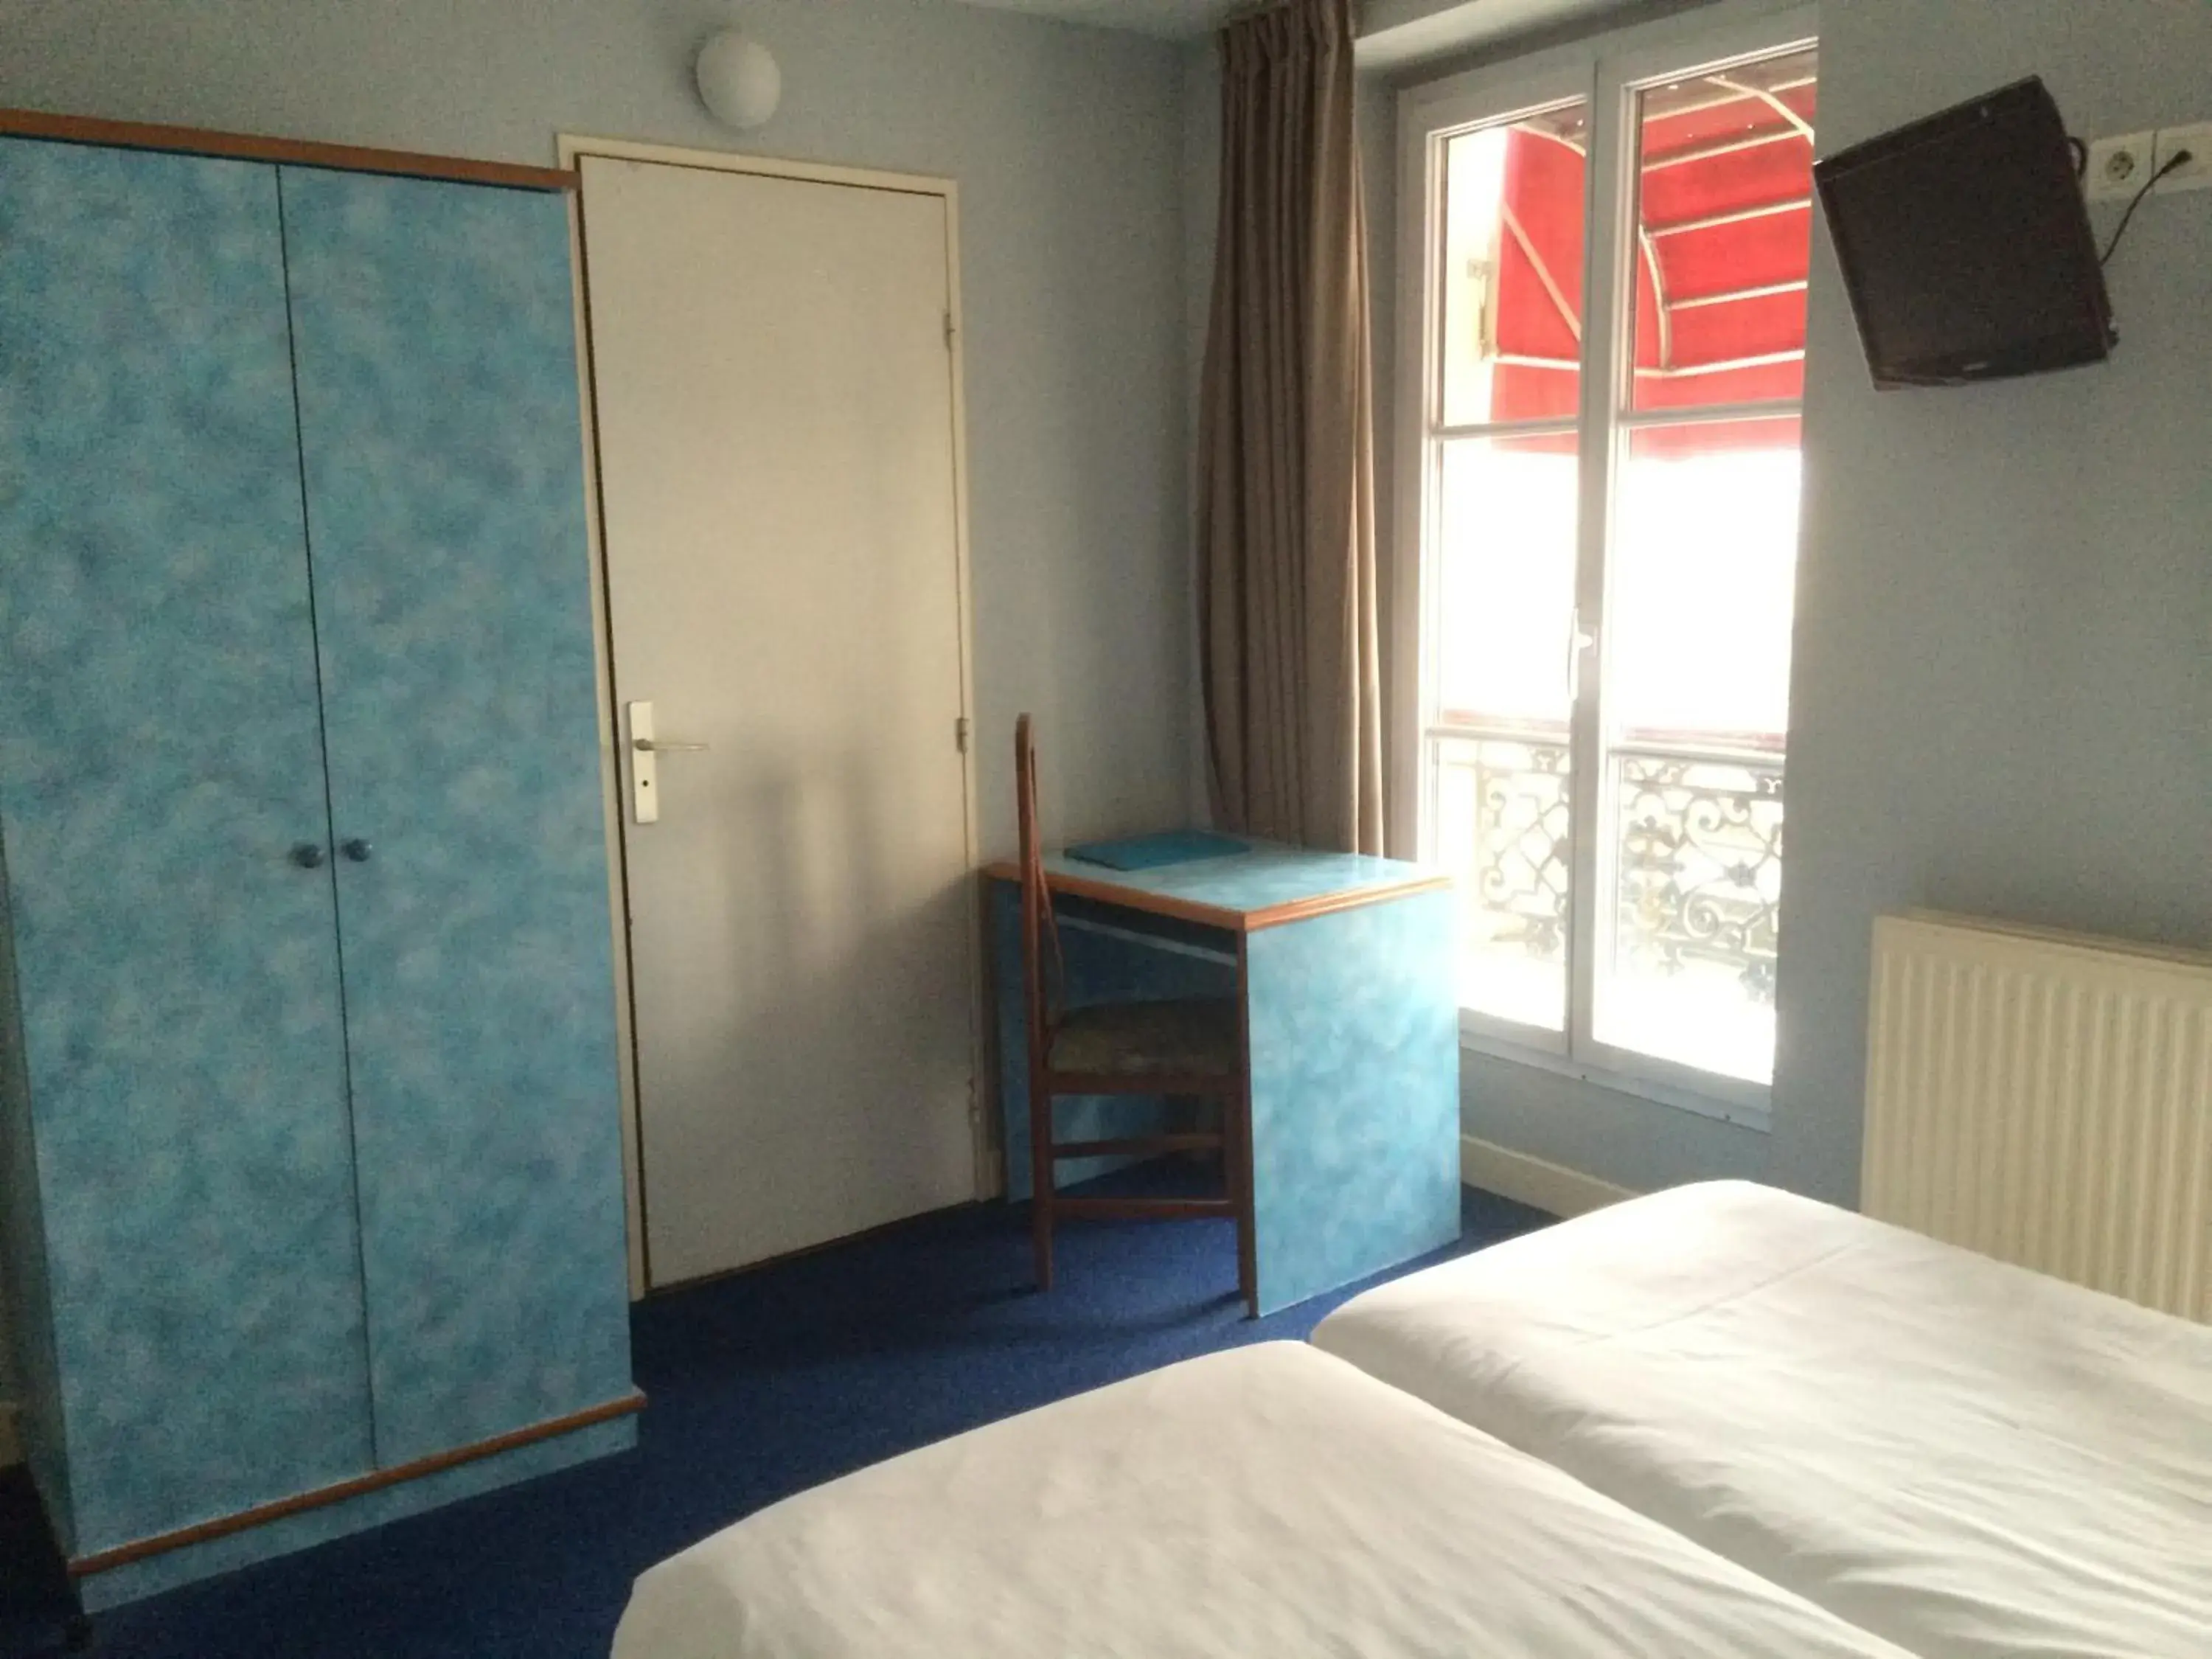 Bed in Hotel Royal Mansart